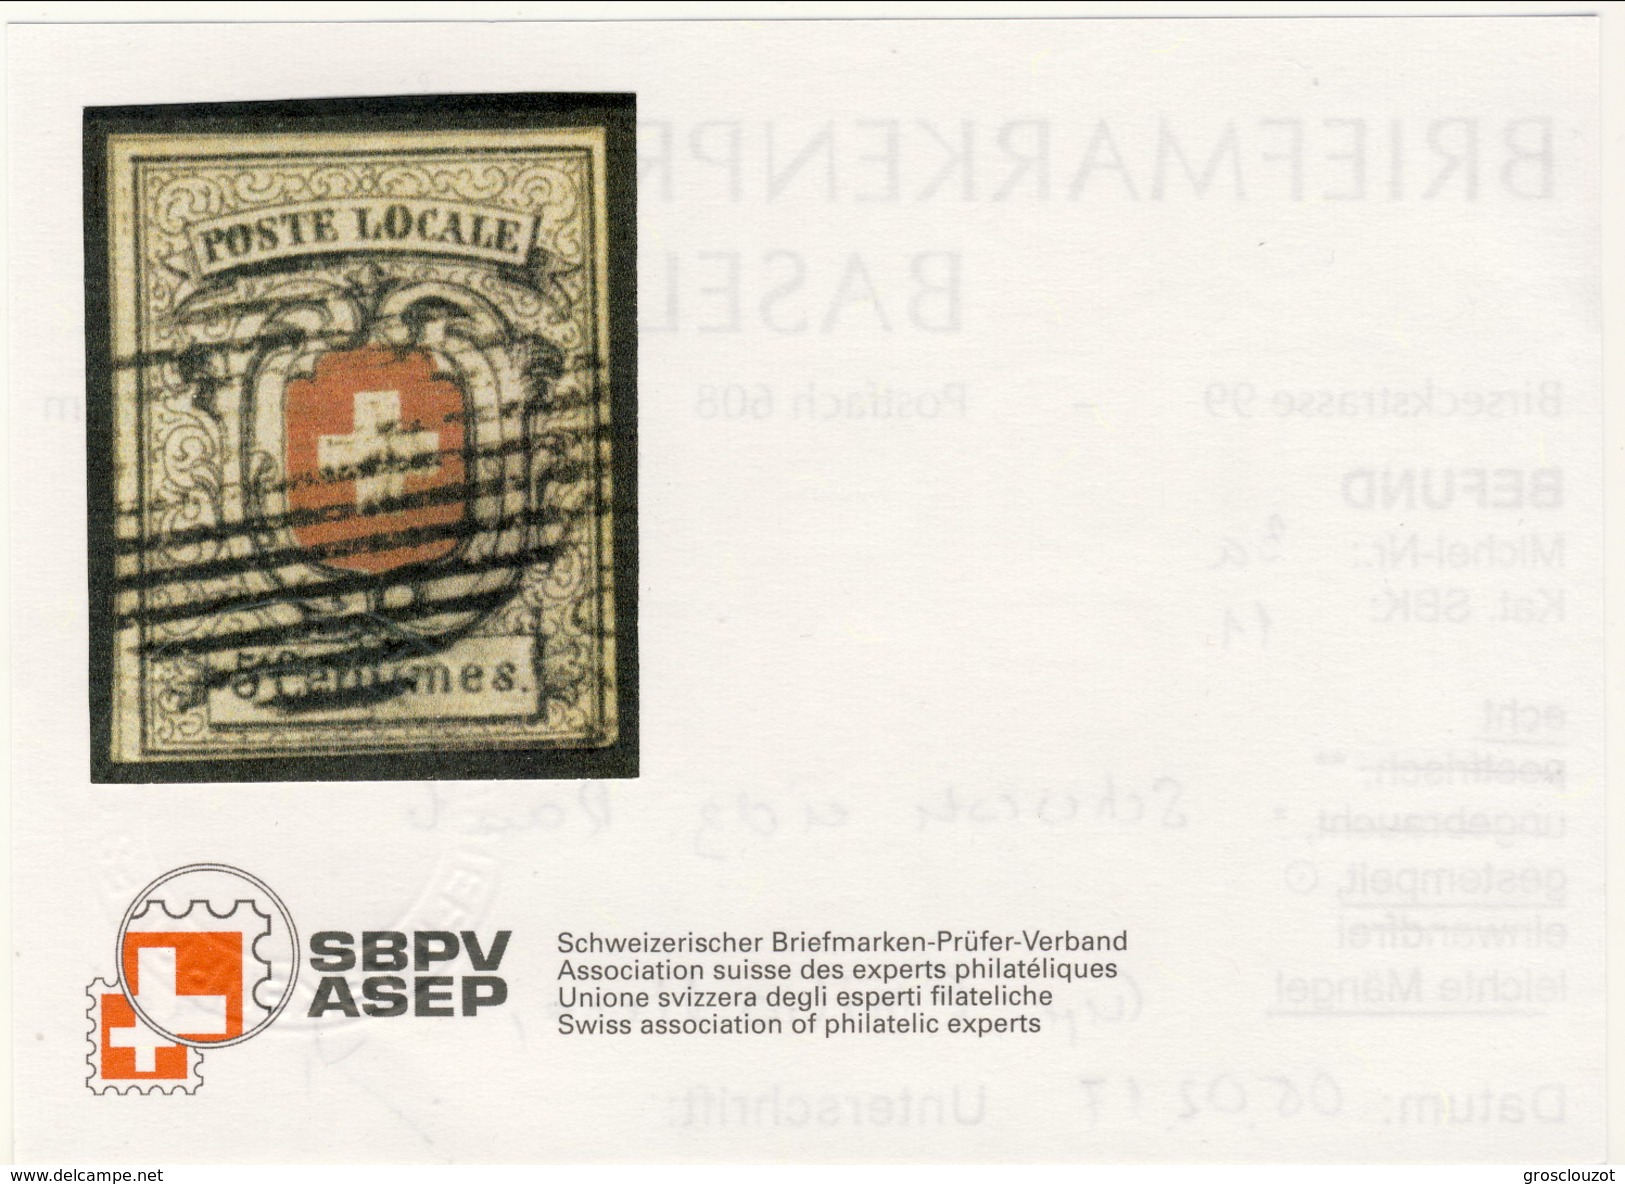 Svizzera 1851 Poste Cantonali Neuchatel N. 7 C. 5 Nero E Rosso Usato LUX Cat &euro; 5000 (E. Diena, Raybaudi) ATTEST-PER - 1843-1852 Poste Federali E Cantonali